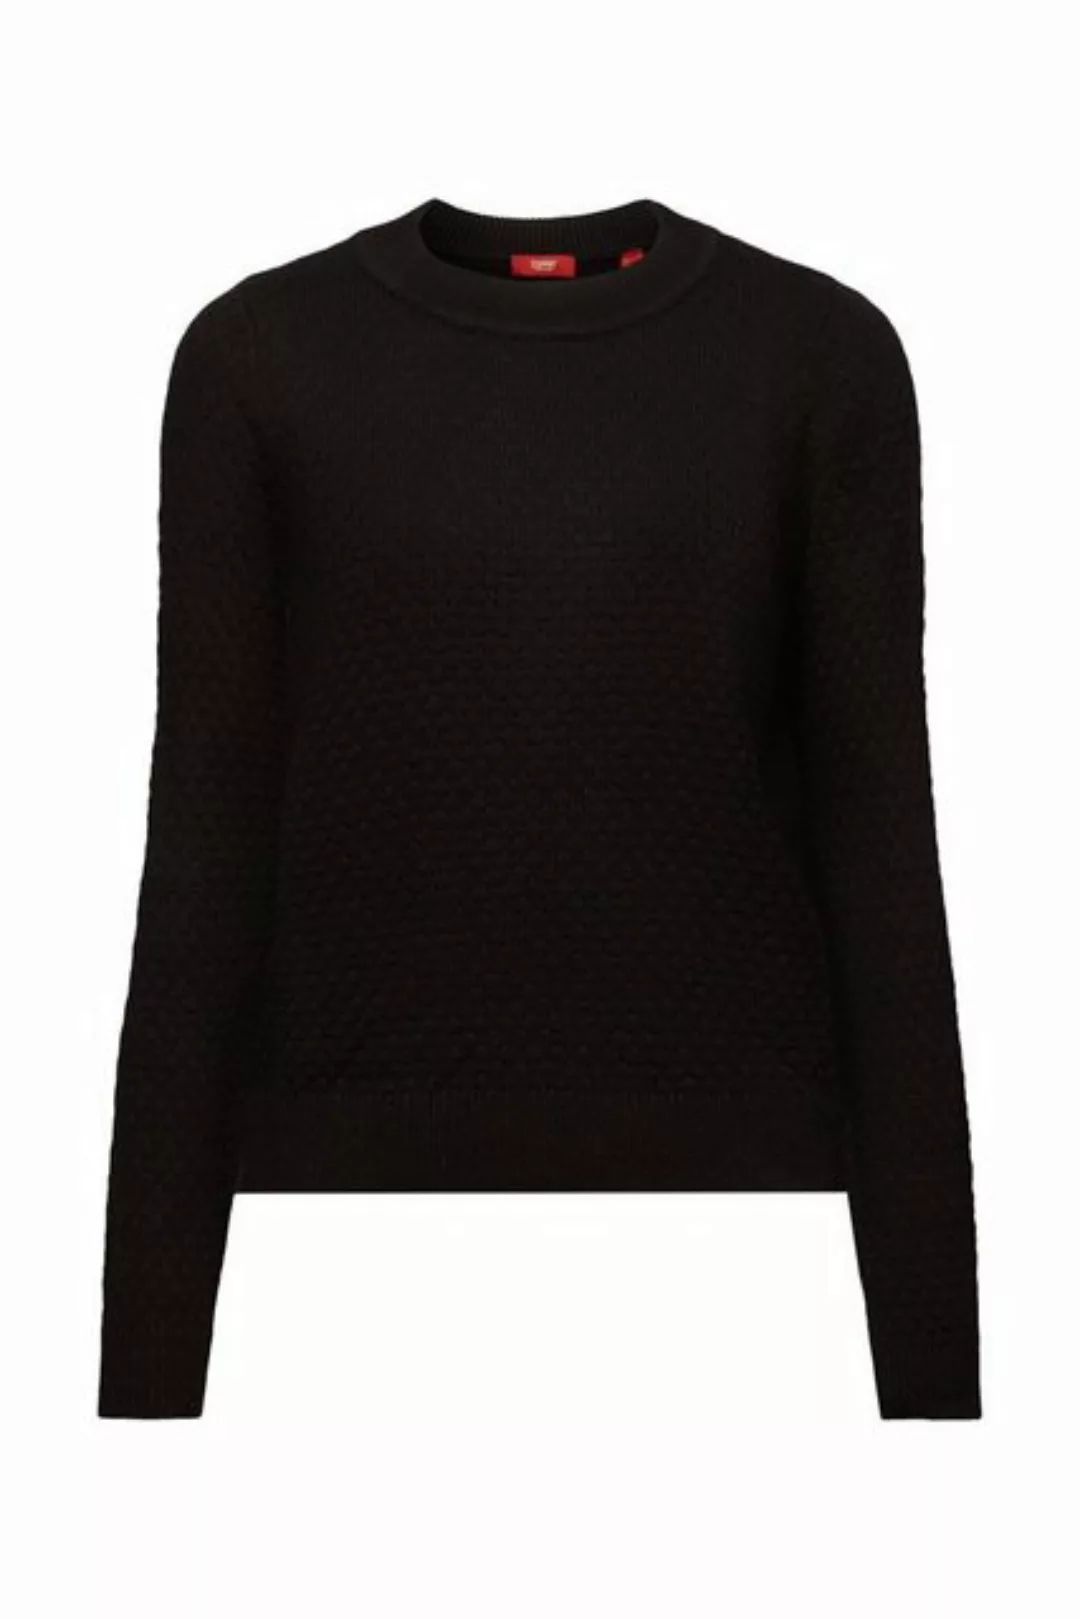 Esprit Damen Pullover 103ee1i355 günstig online kaufen